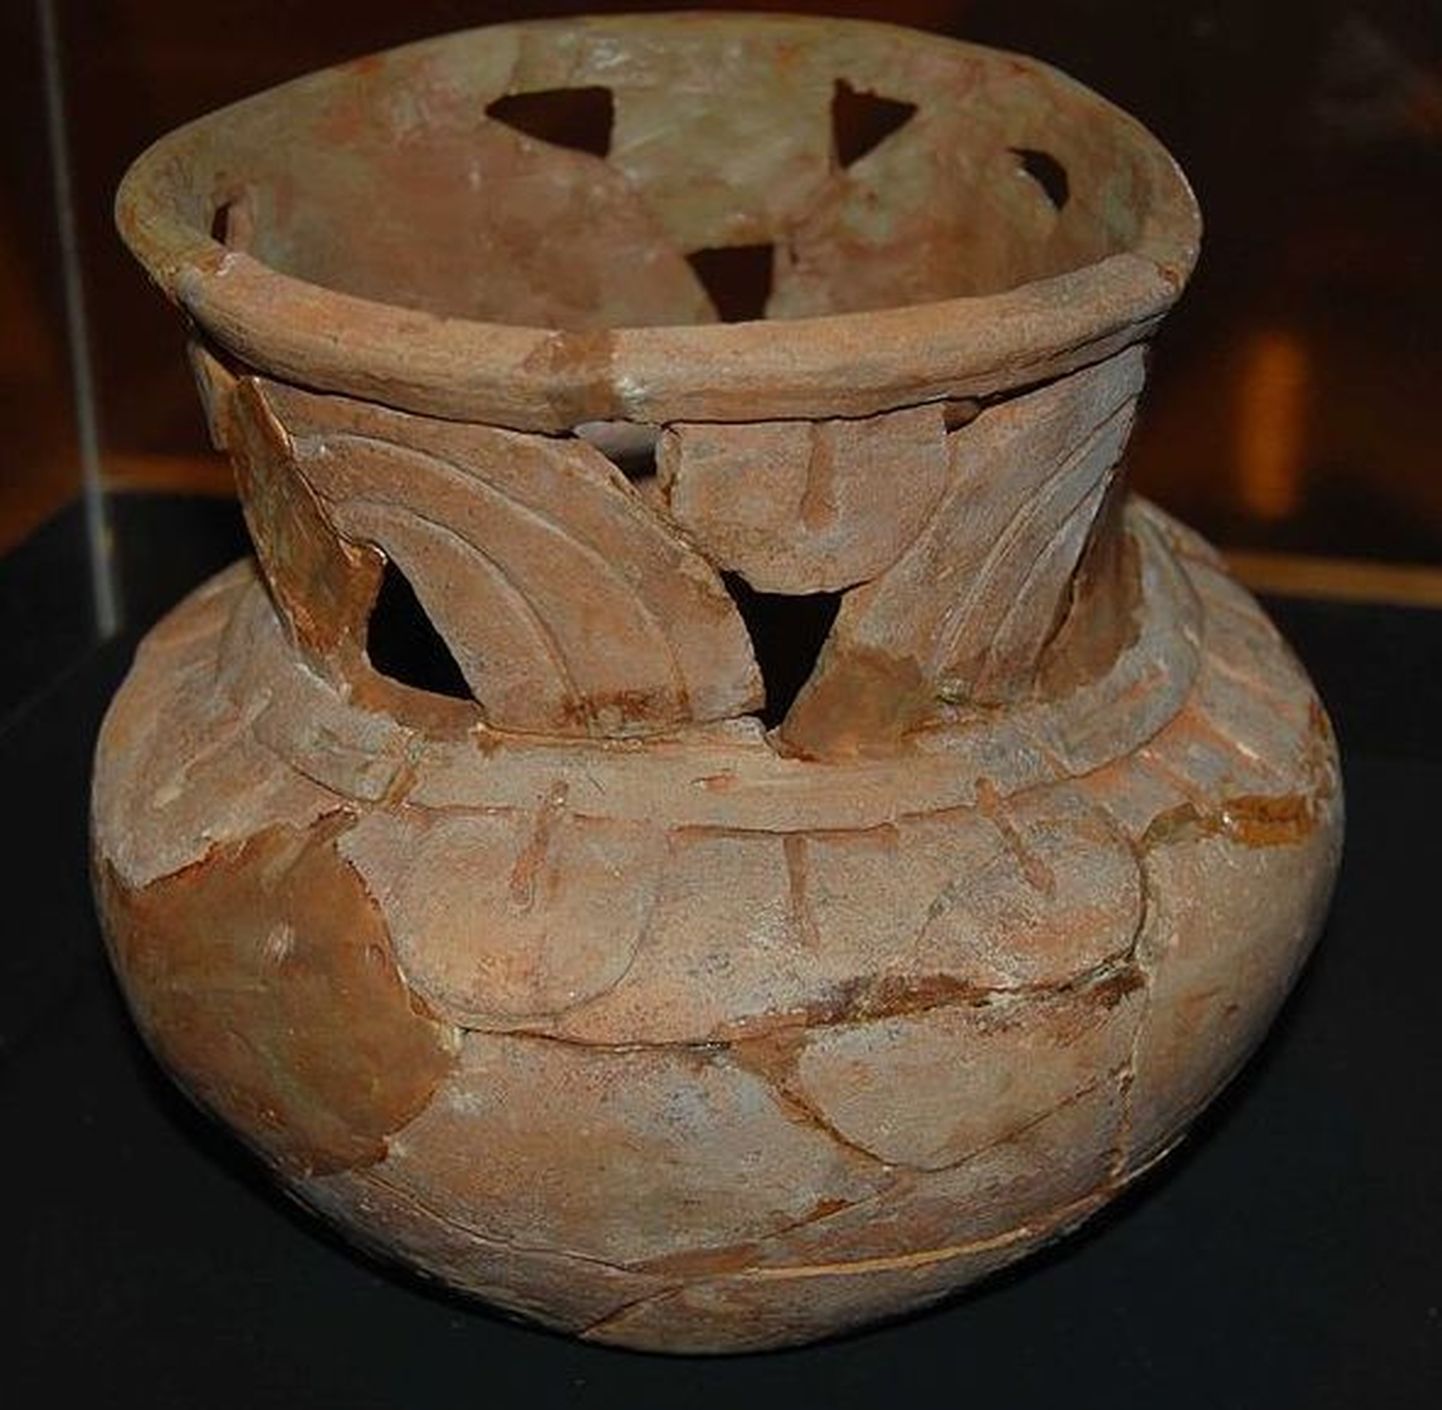 Põhja-Ameerikas põliselanikud jõid tuhat aastat tagasi okseiileksi (Ilex vomitoria) lehtedest valmistatud kanget teed